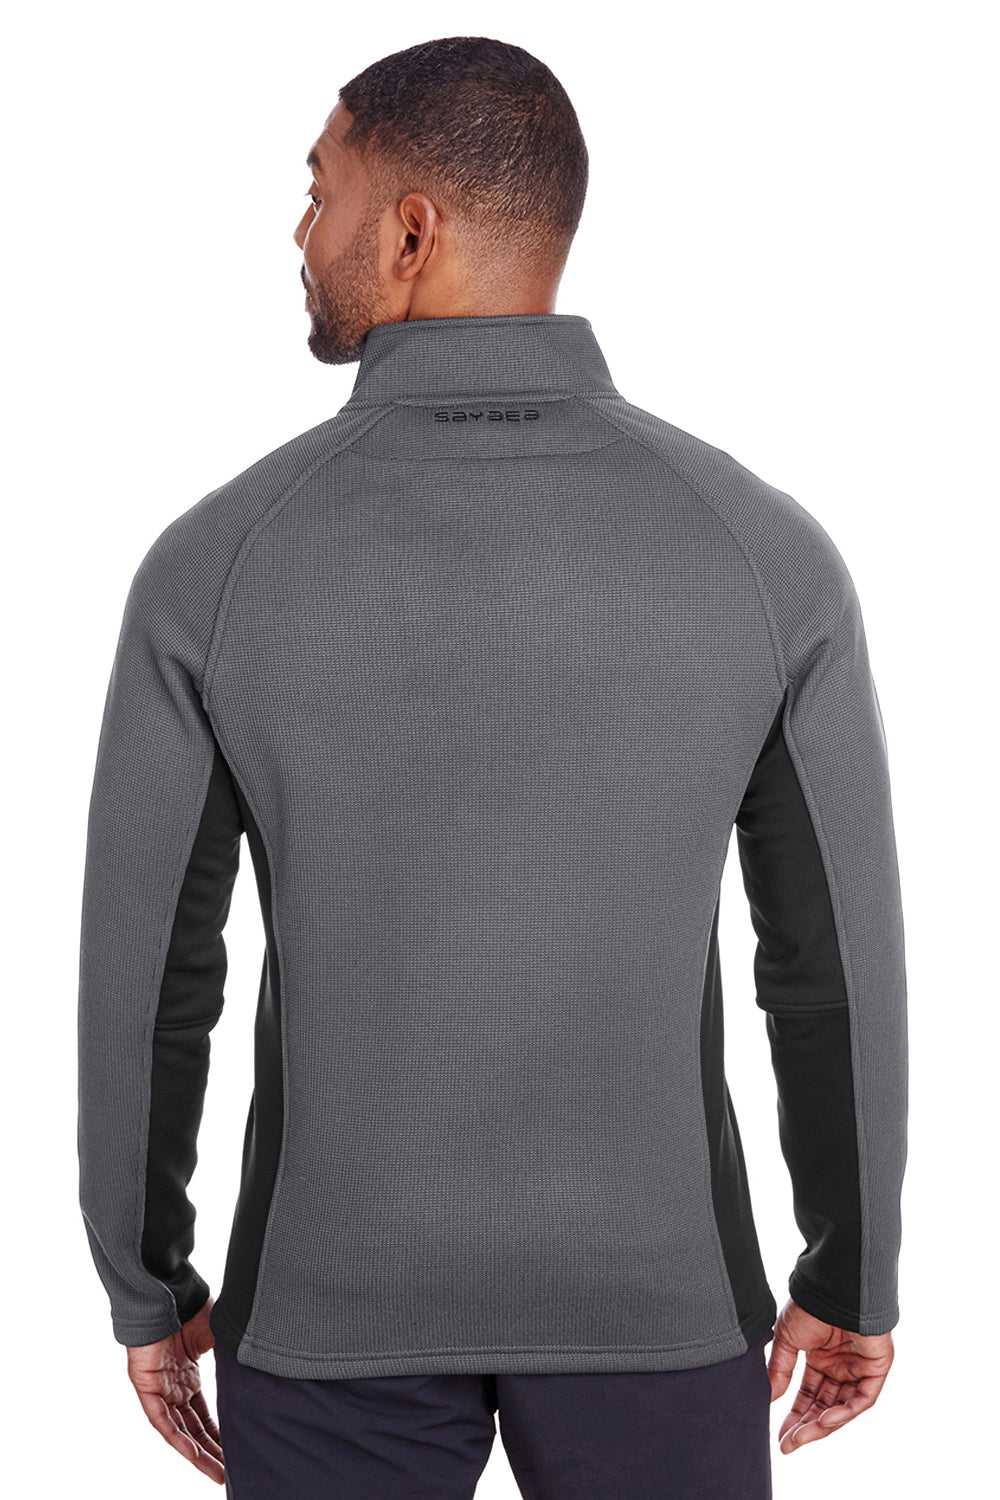 Spyder S16561 Mens Constant 1/4 Zip Sweater Grey Back